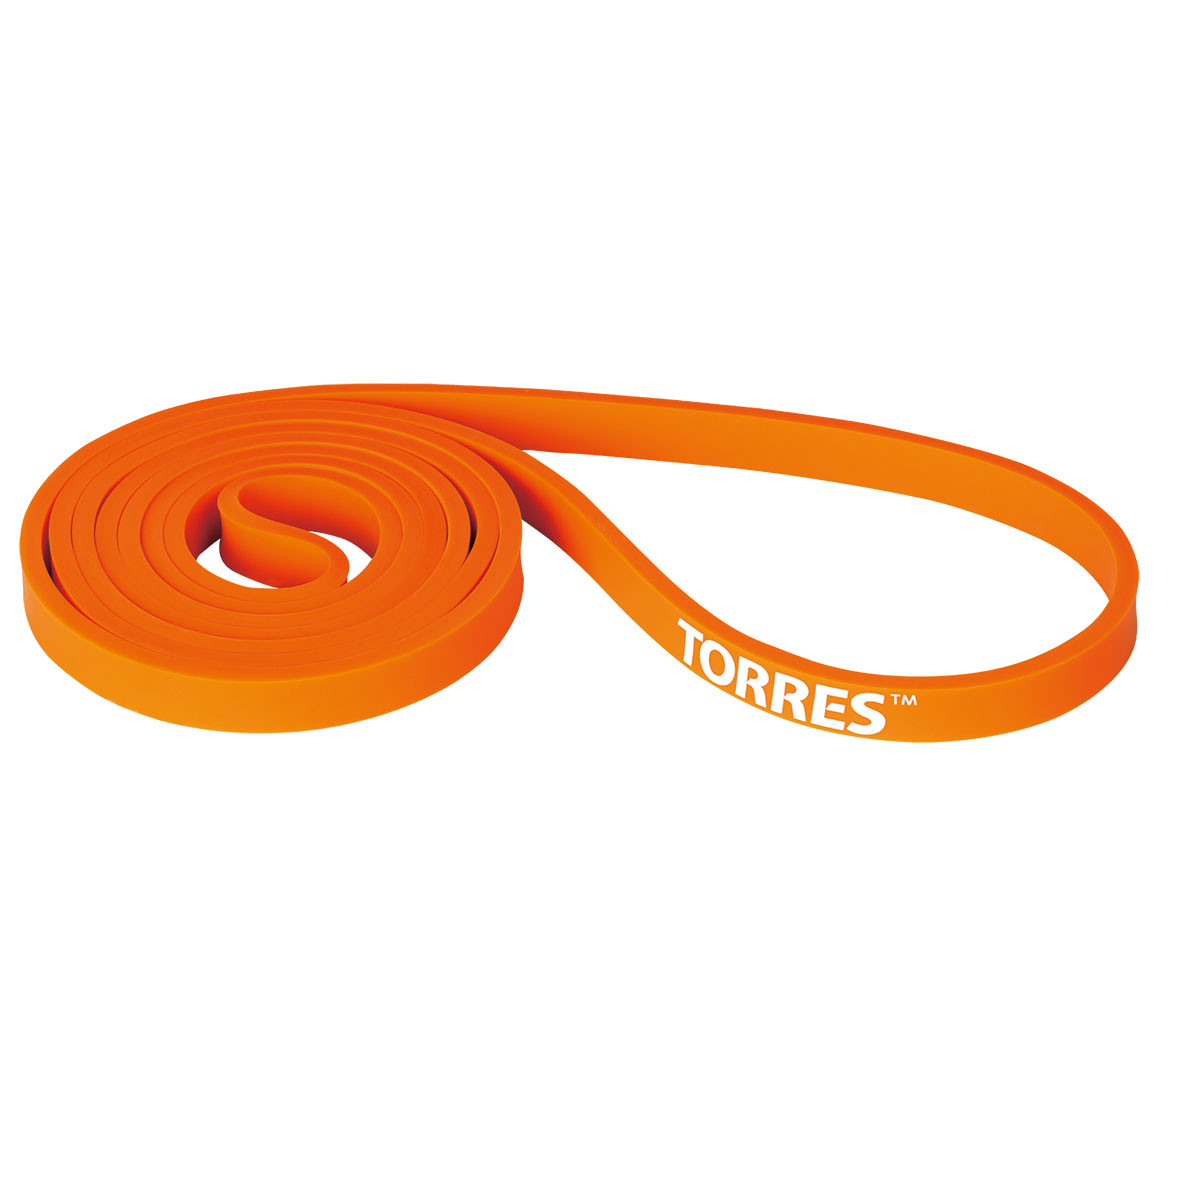 Лента Torres для аэробики, латексная, сопротивление 15 кг, оранжевый